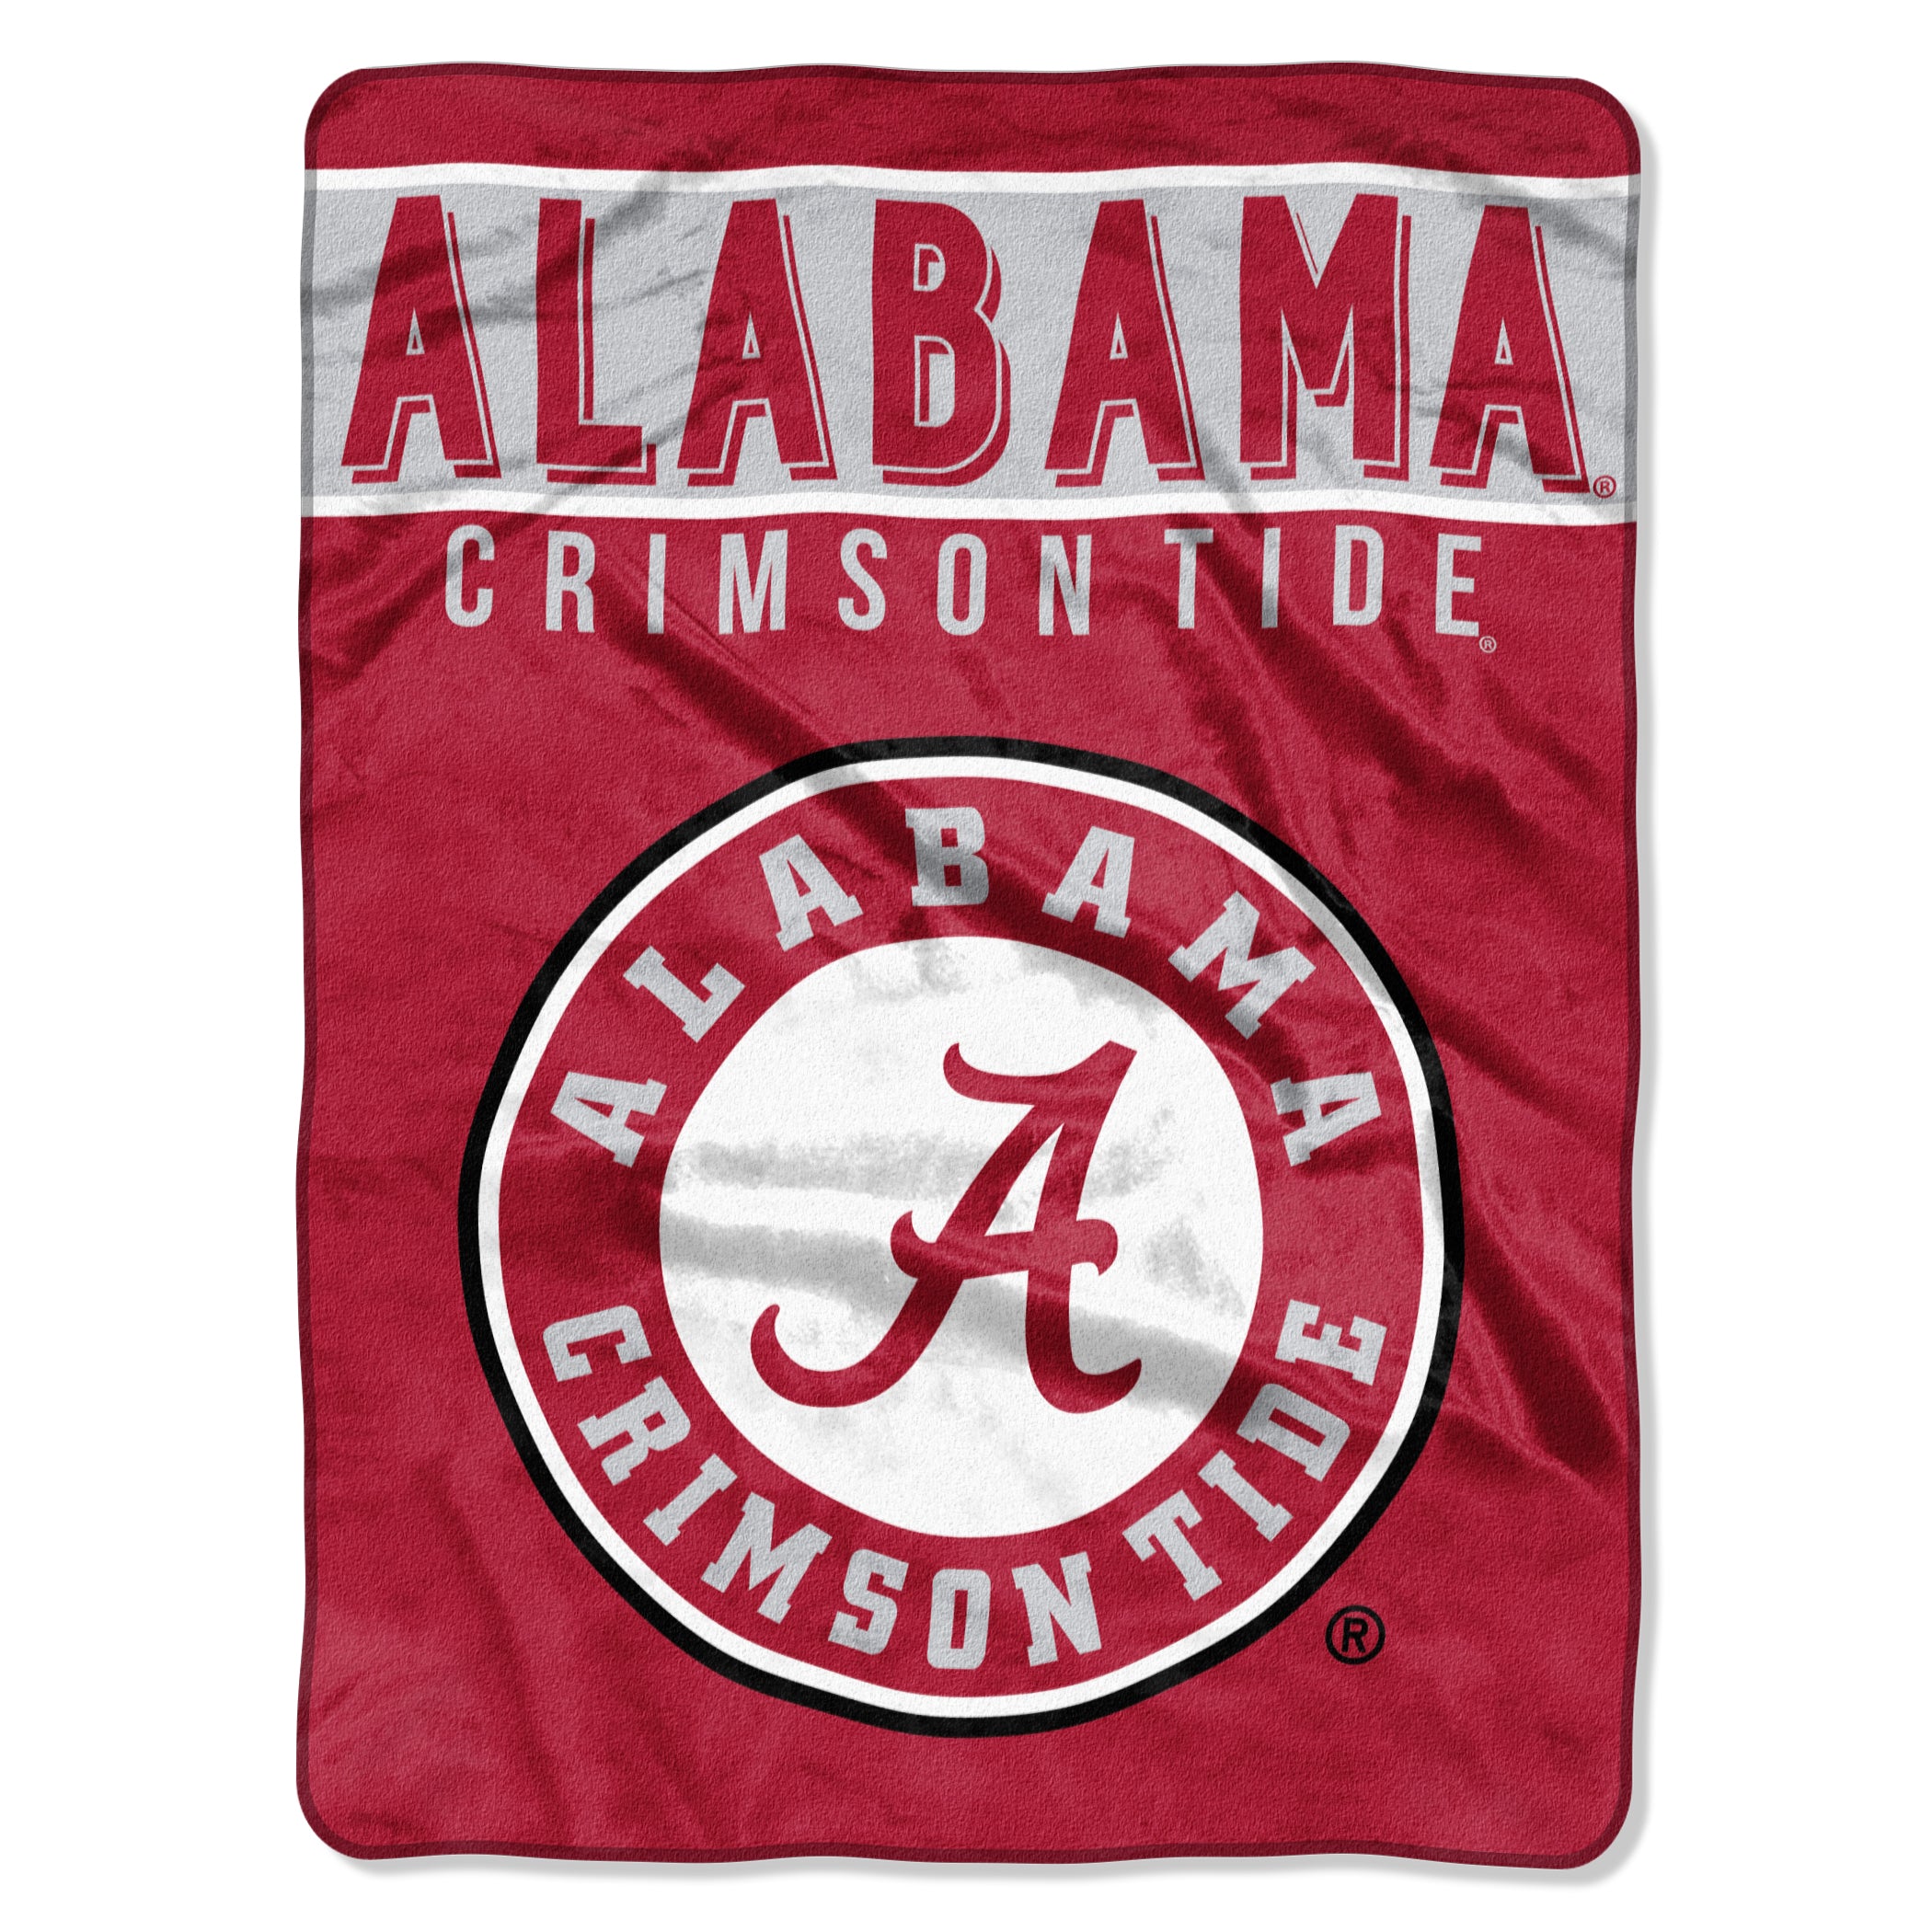 Alabama Crimson Tide Blanket 60x80 Raschel Basic Design